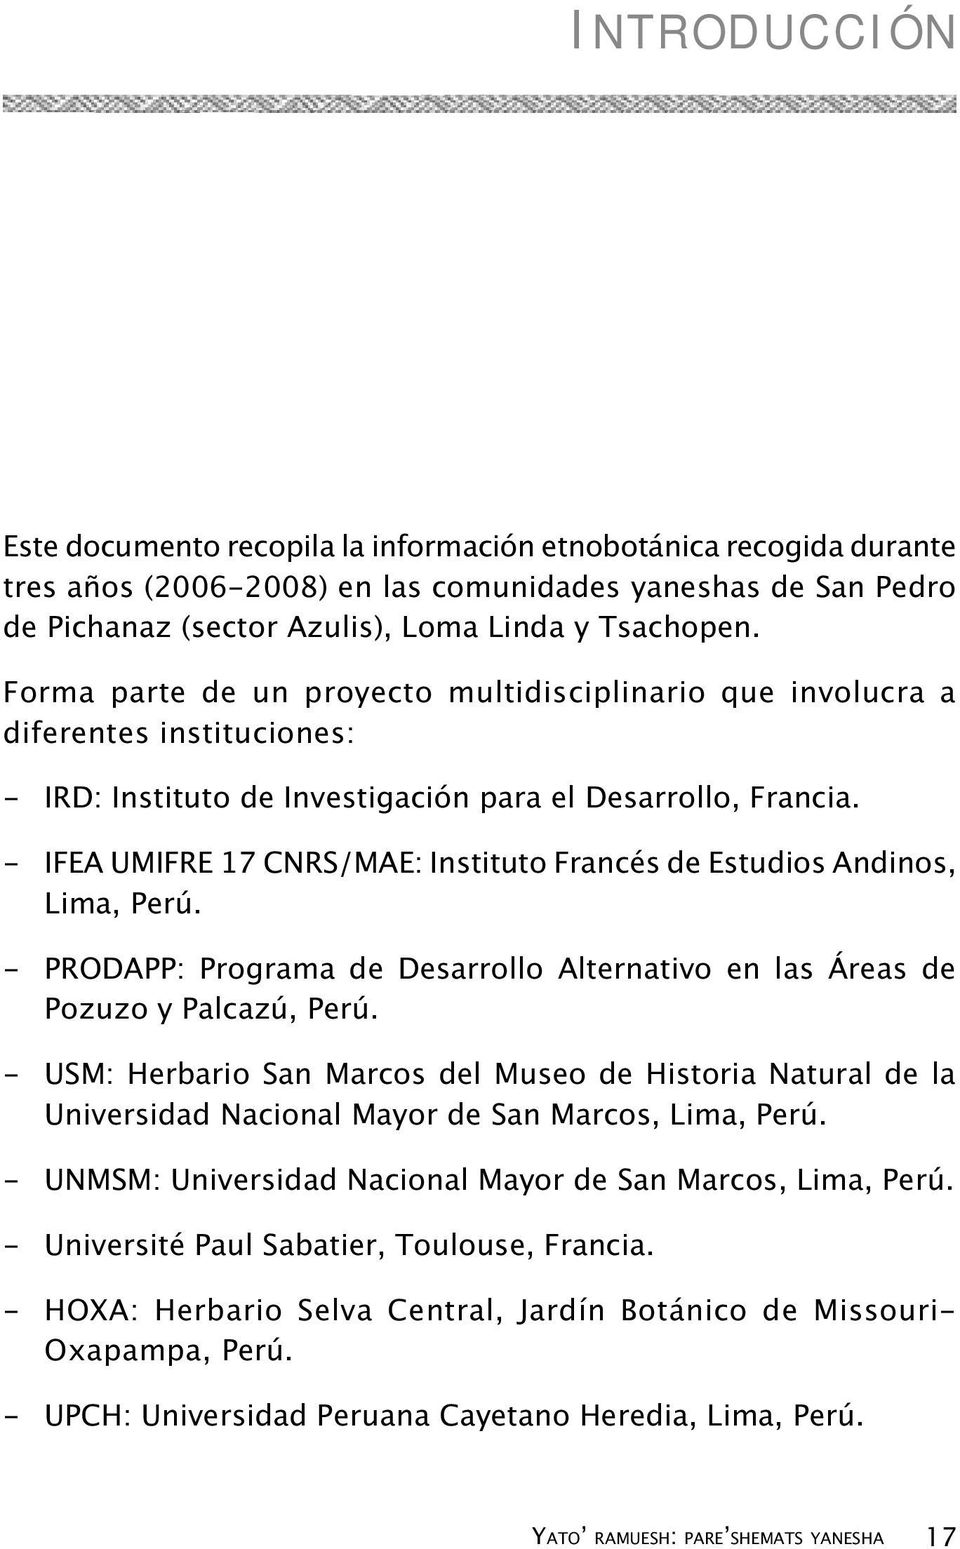 - IFEA UMIFRE 17 CNRS/MAE: Instituto Francés de Estudios Andinos, Lima, Perú. - PRODAPP: Programa de Desarrollo Alternativo en las Áreas de Pozuzo y Palcazú, Perú.